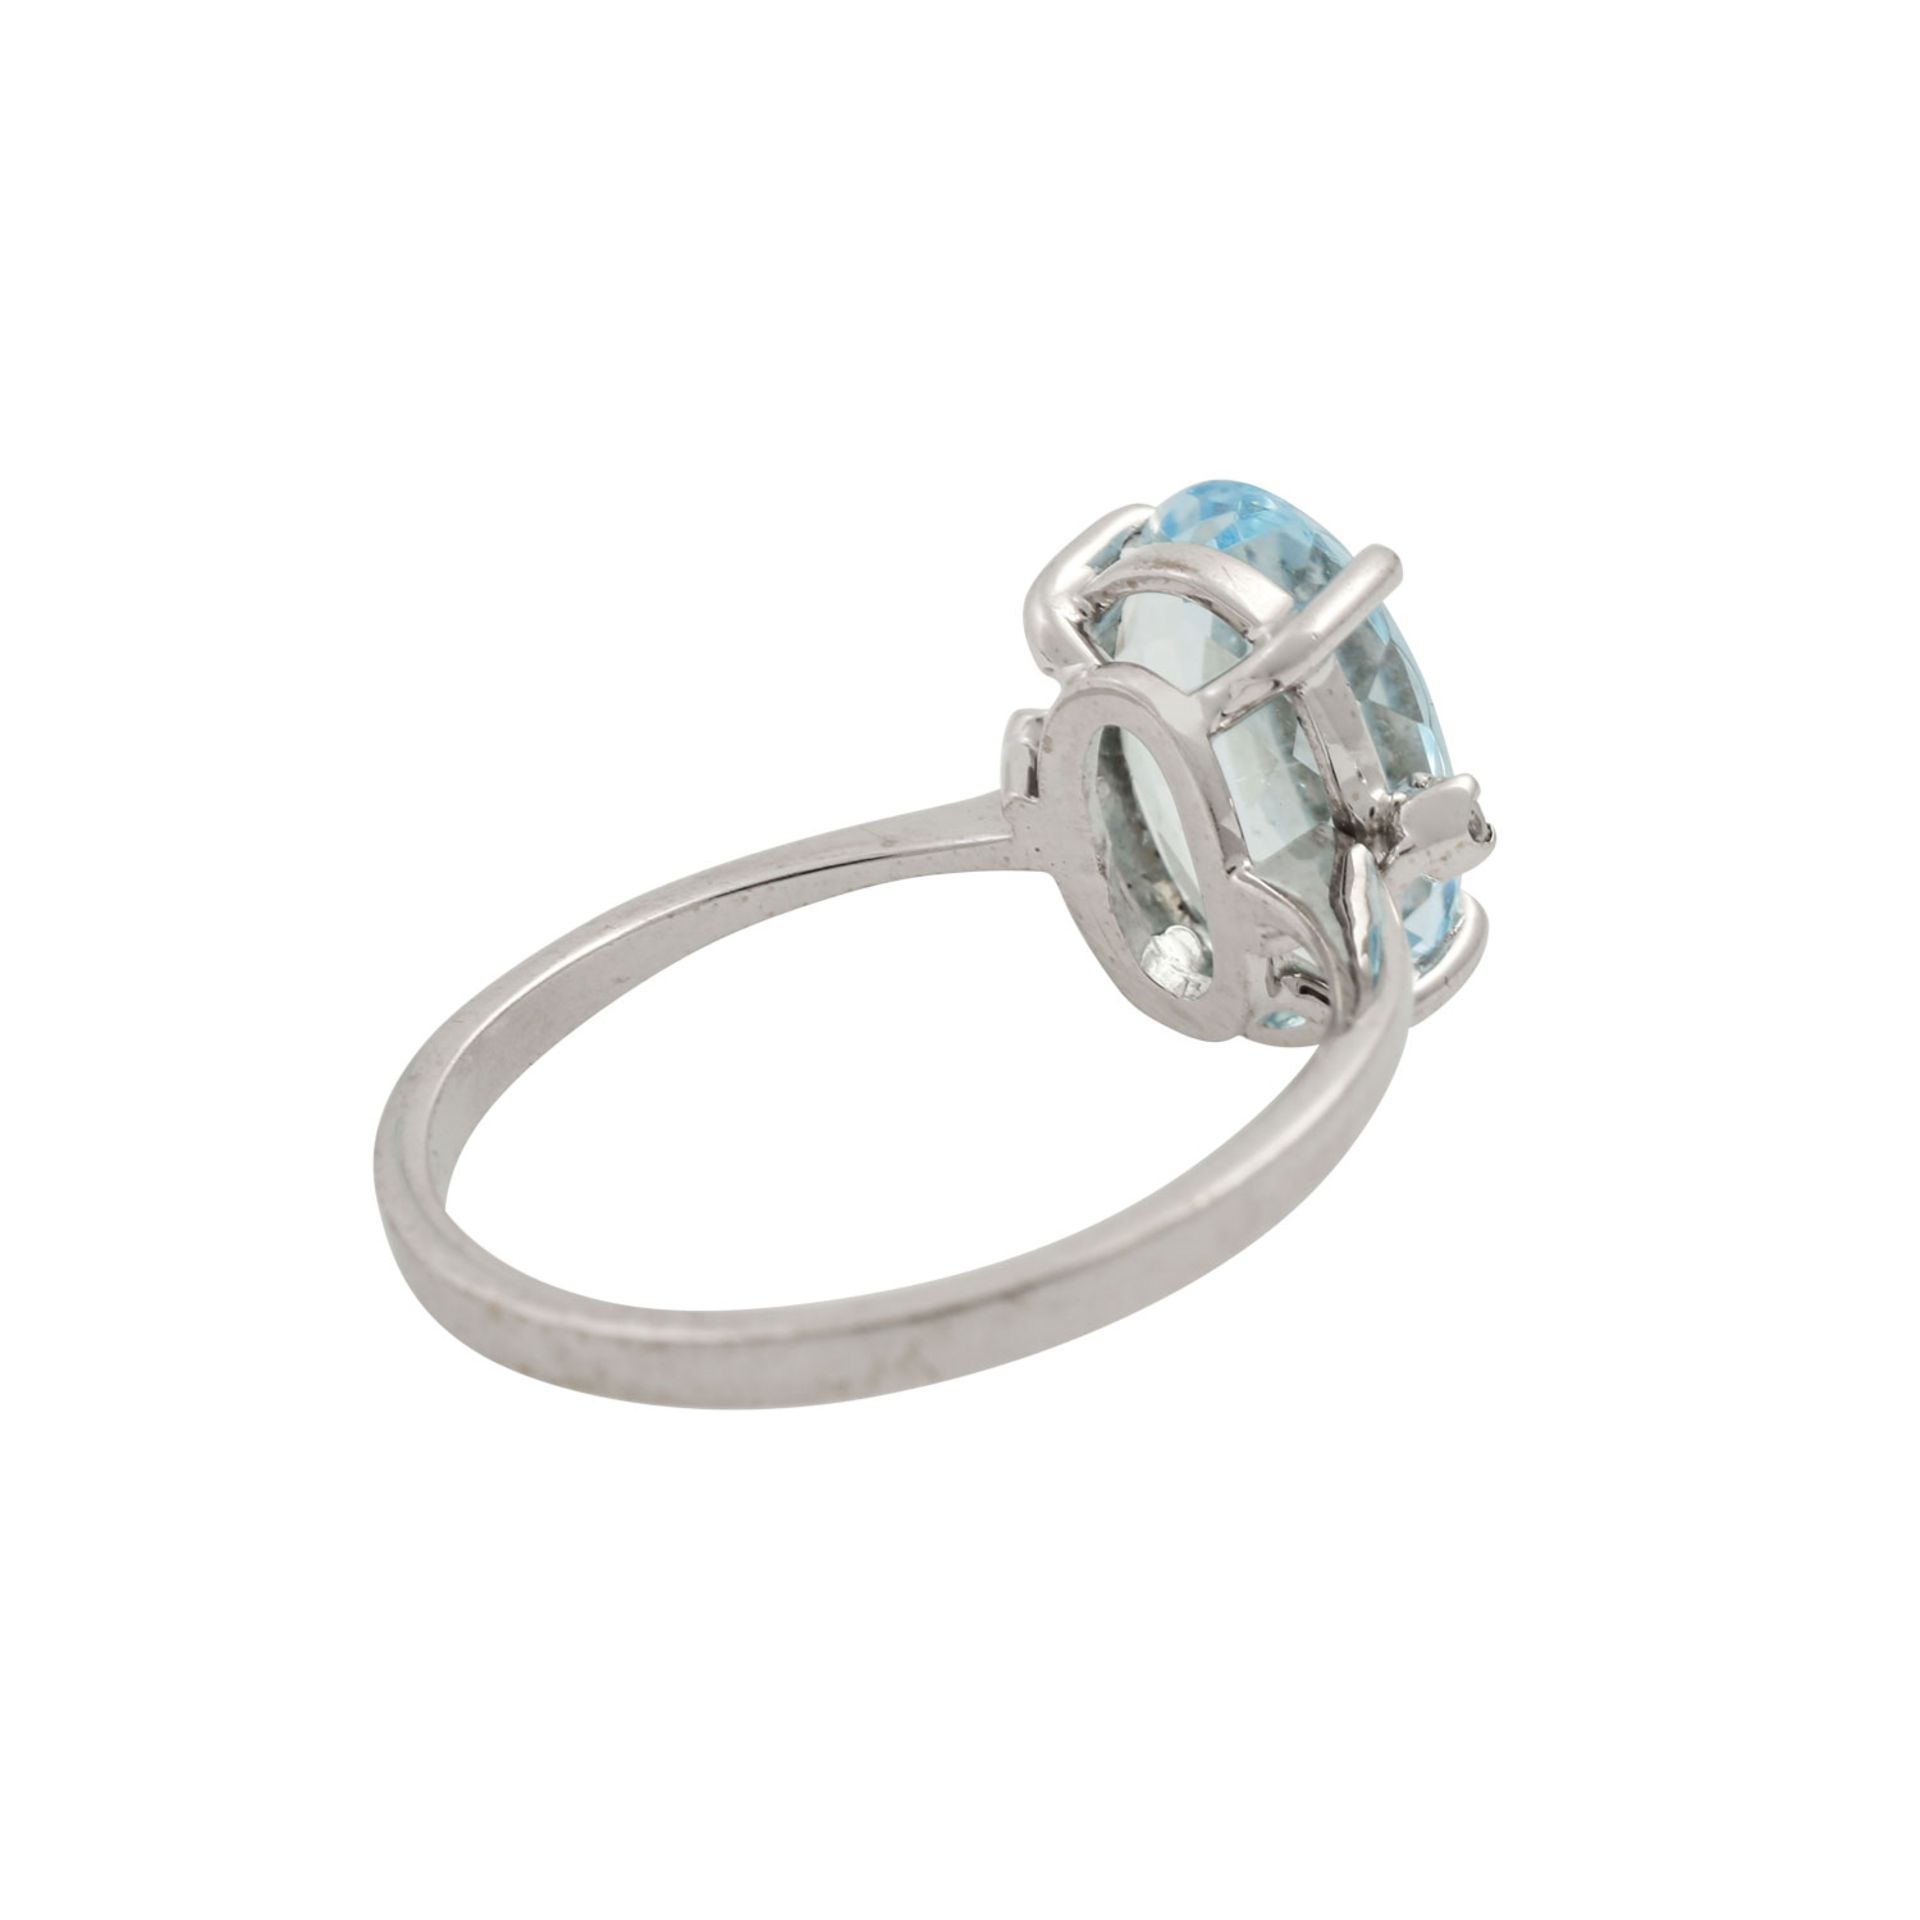 Ring mit oval facettiertem Aquamarin und 2 Achtkantdiamanten, WG 18K, 3,2 g, RW: 55, 2 - Bild 3 aus 4